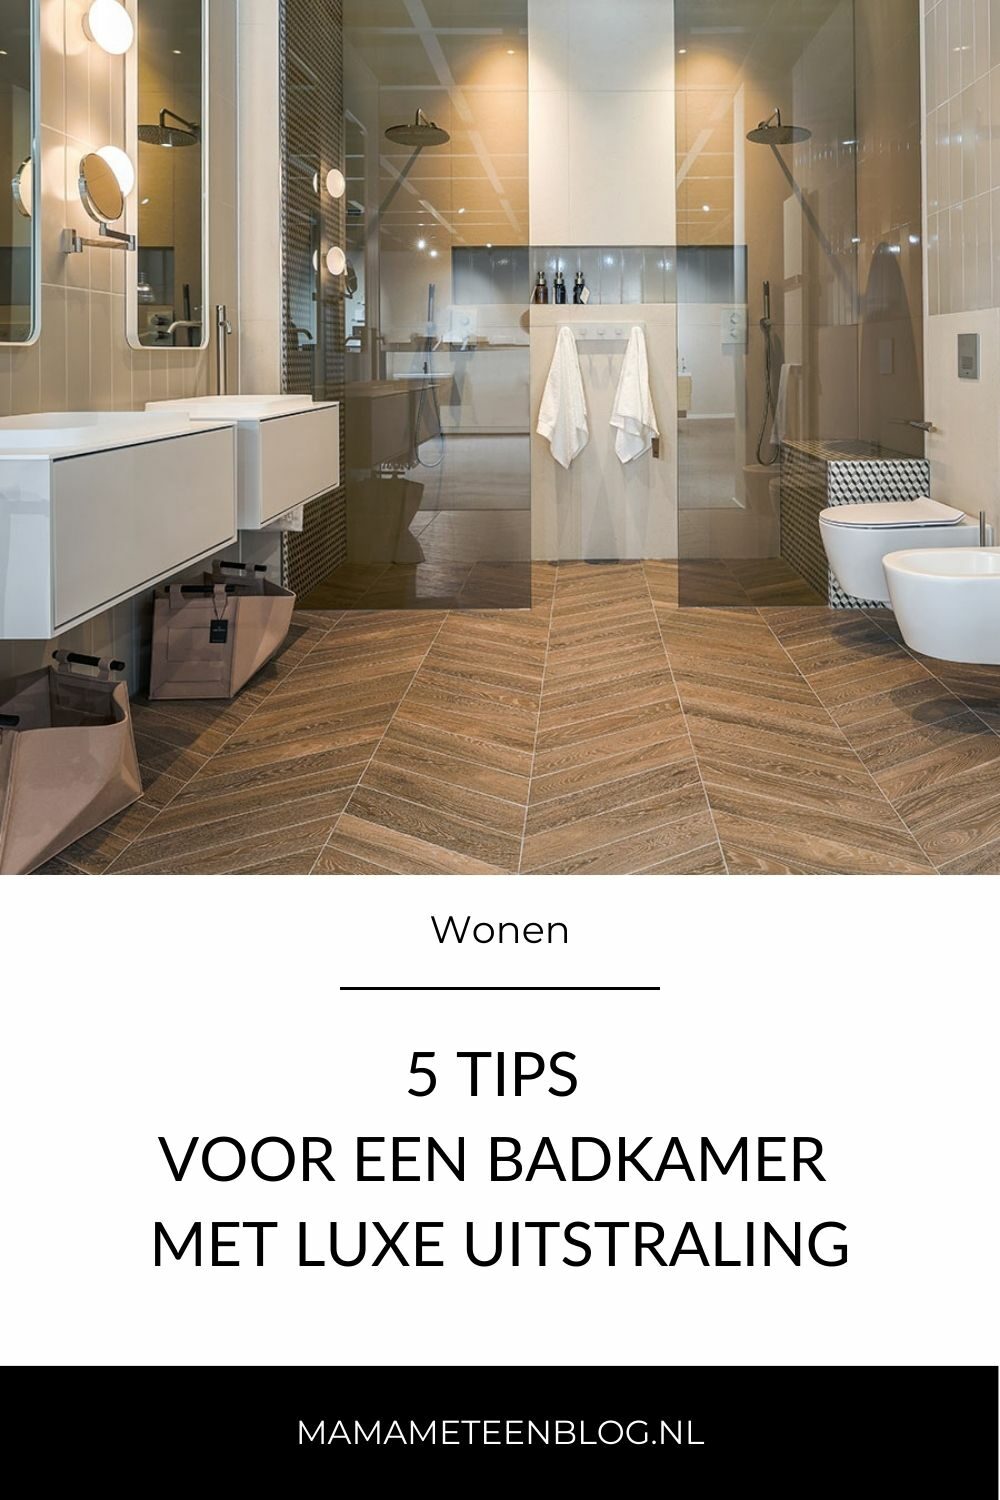 5 tips voor een badkamer met luxe uitstraling mamameteenblog.nl